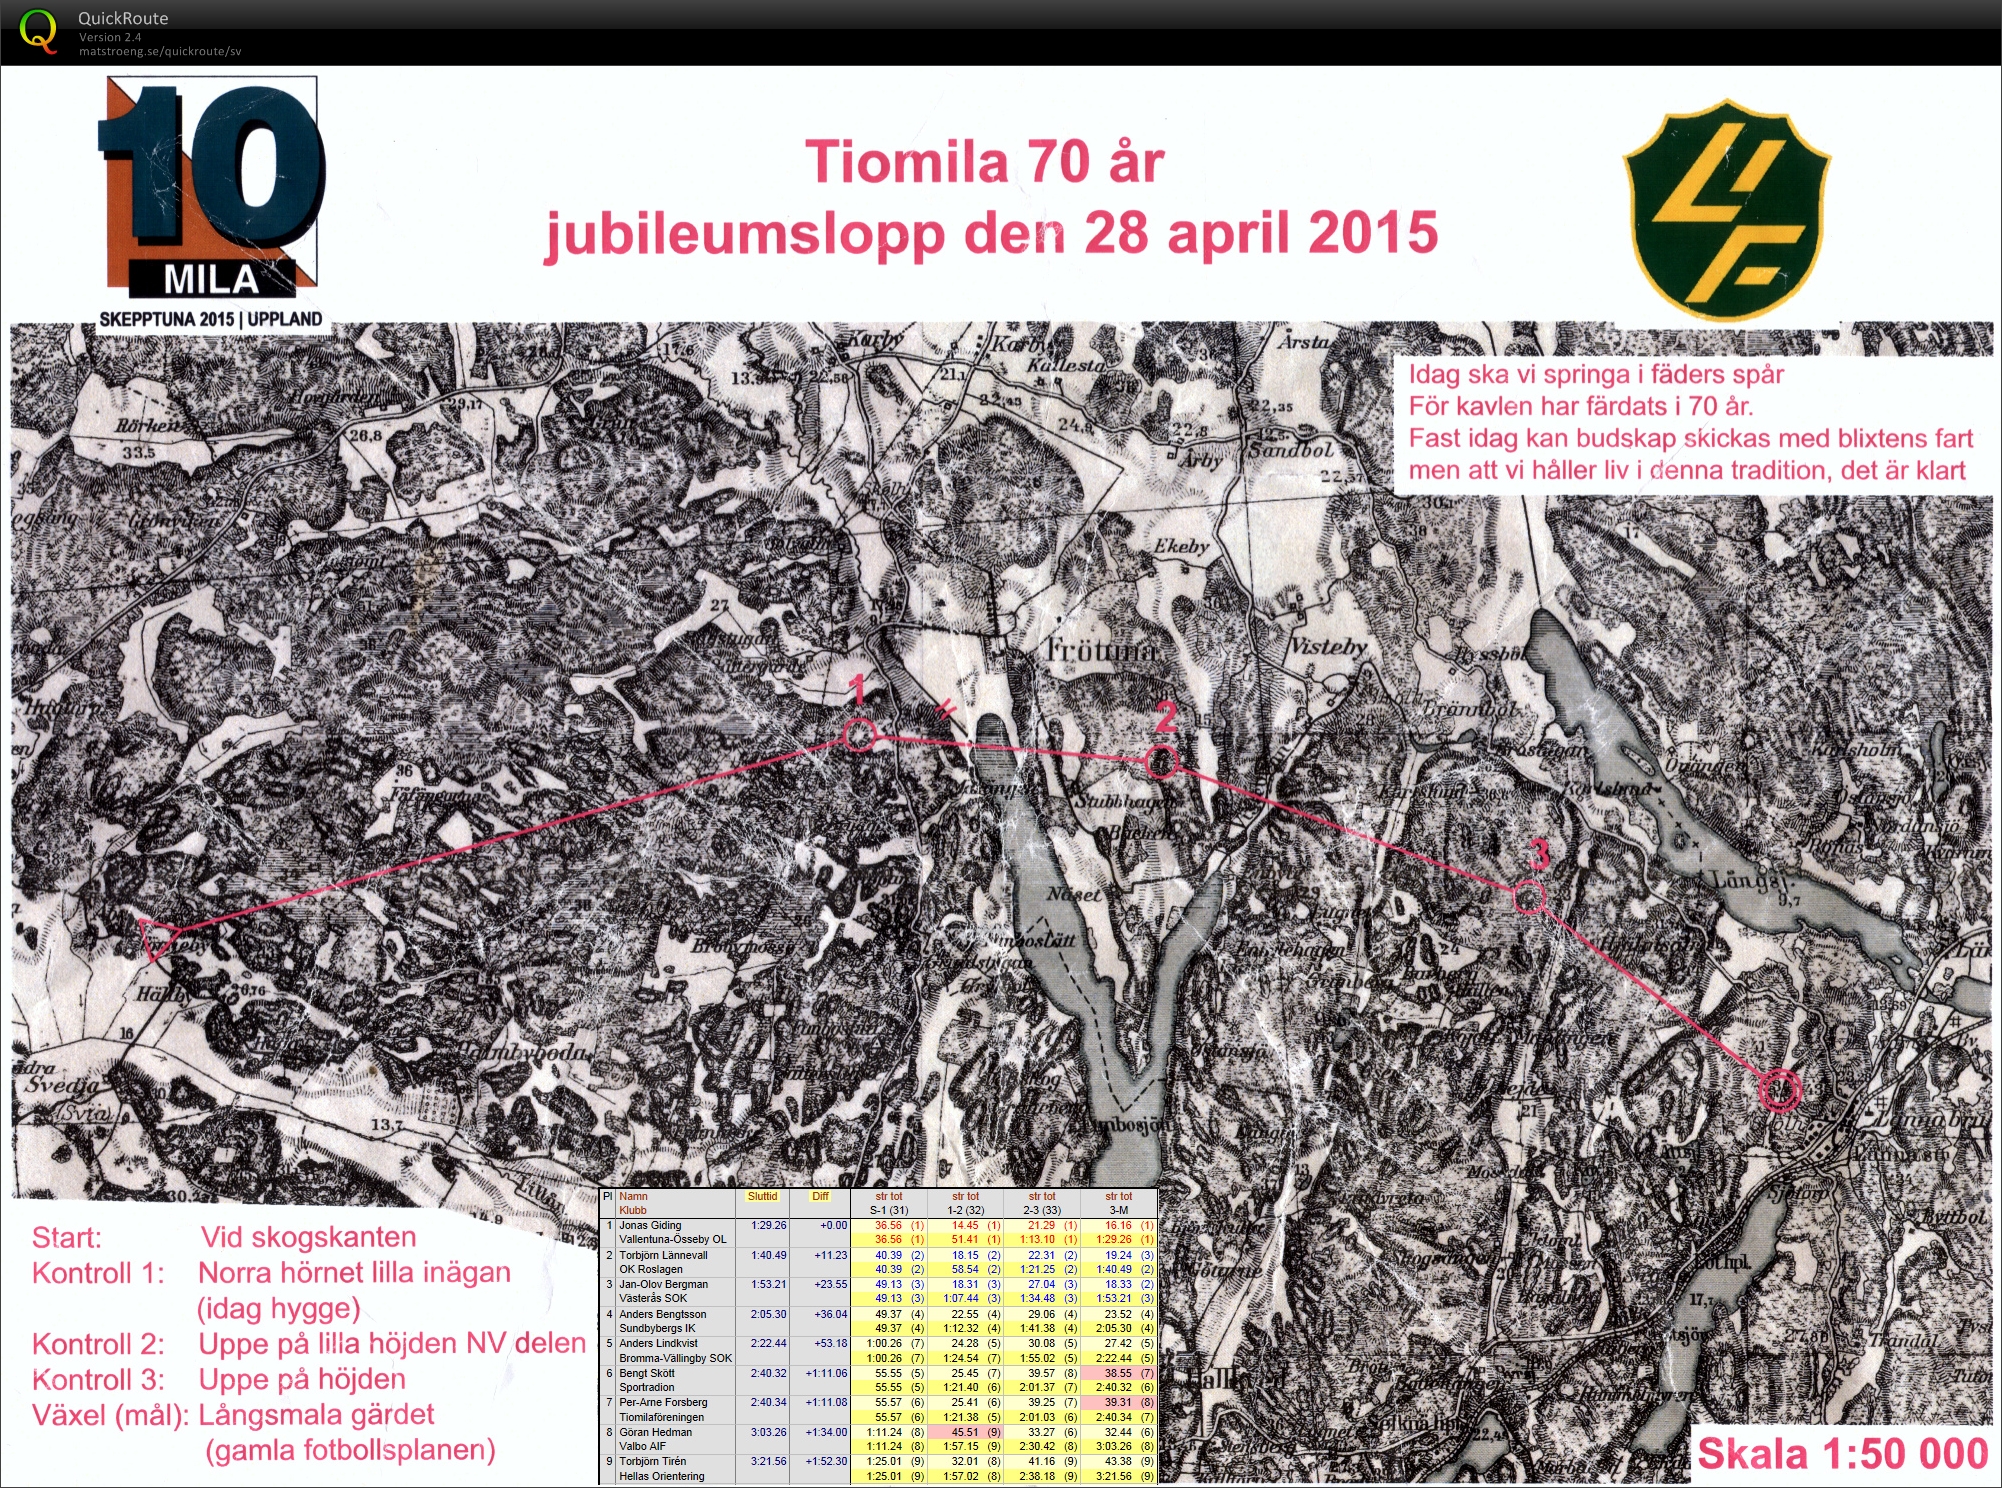 Tiomilas jubileumslopp (28-04-2015)